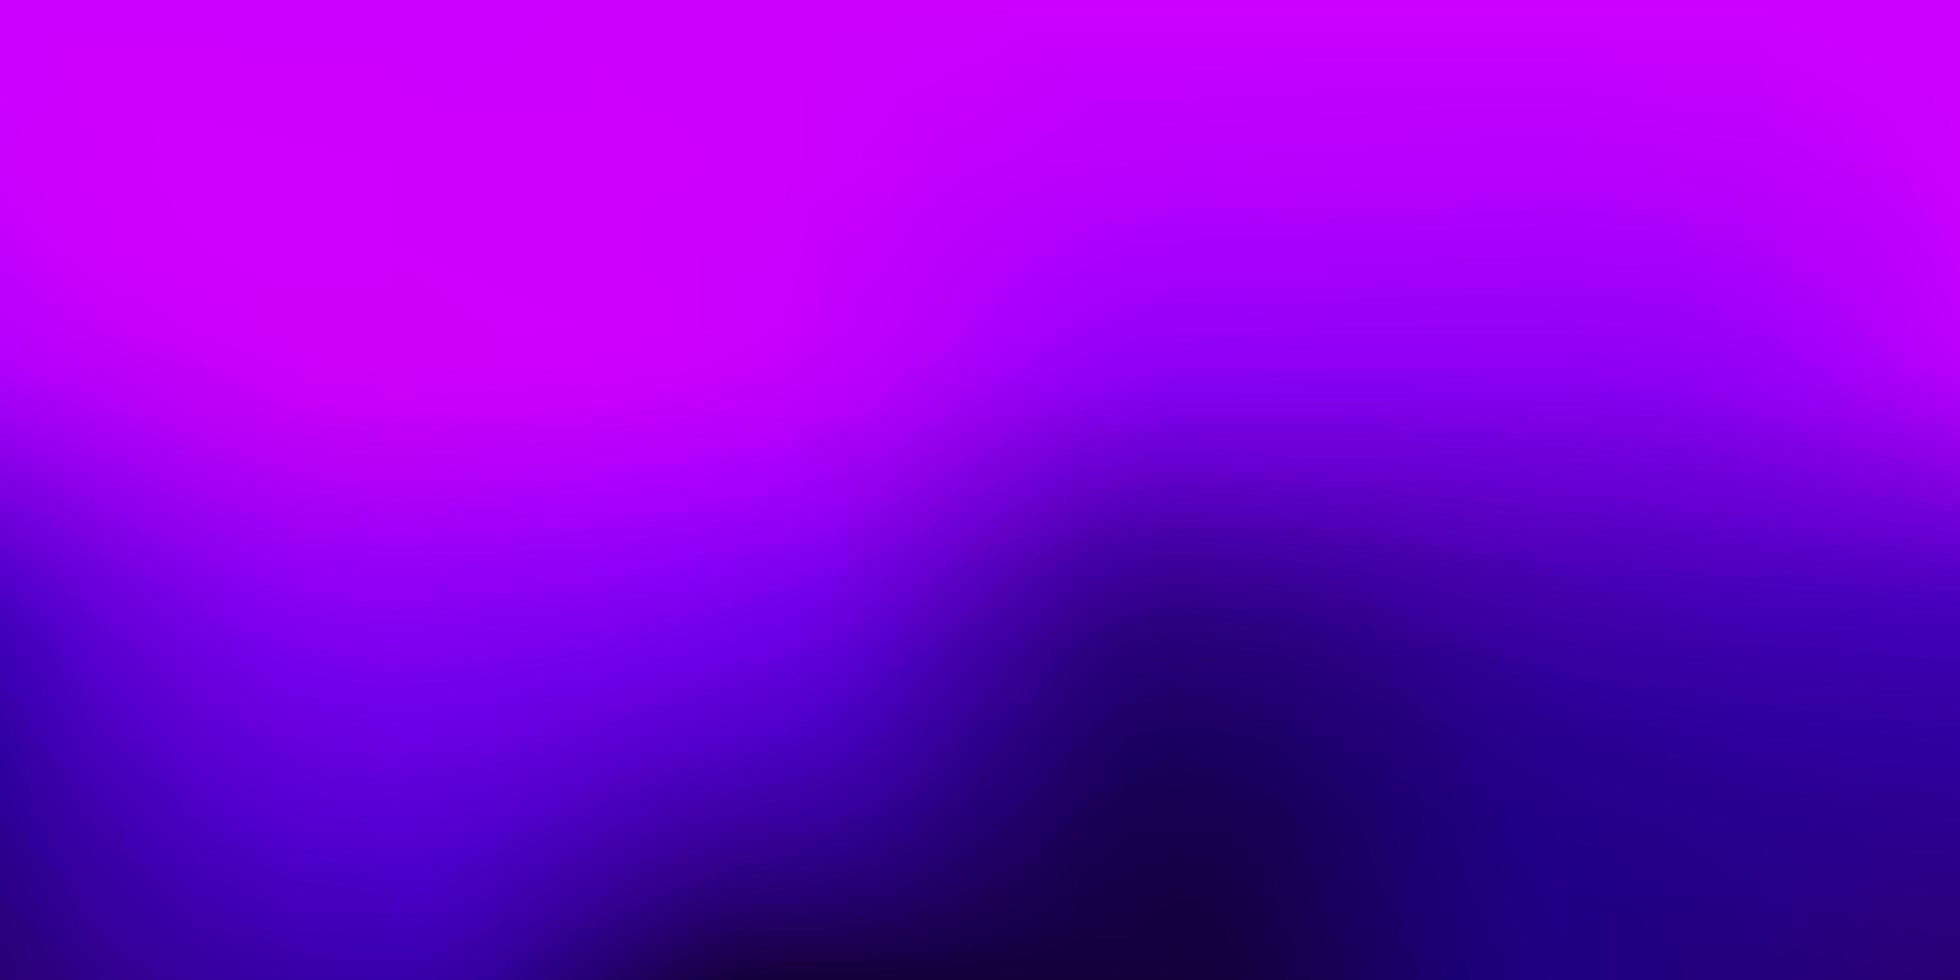 Dark Purple vector blur background 2671393 Vector Art at Vecteezy